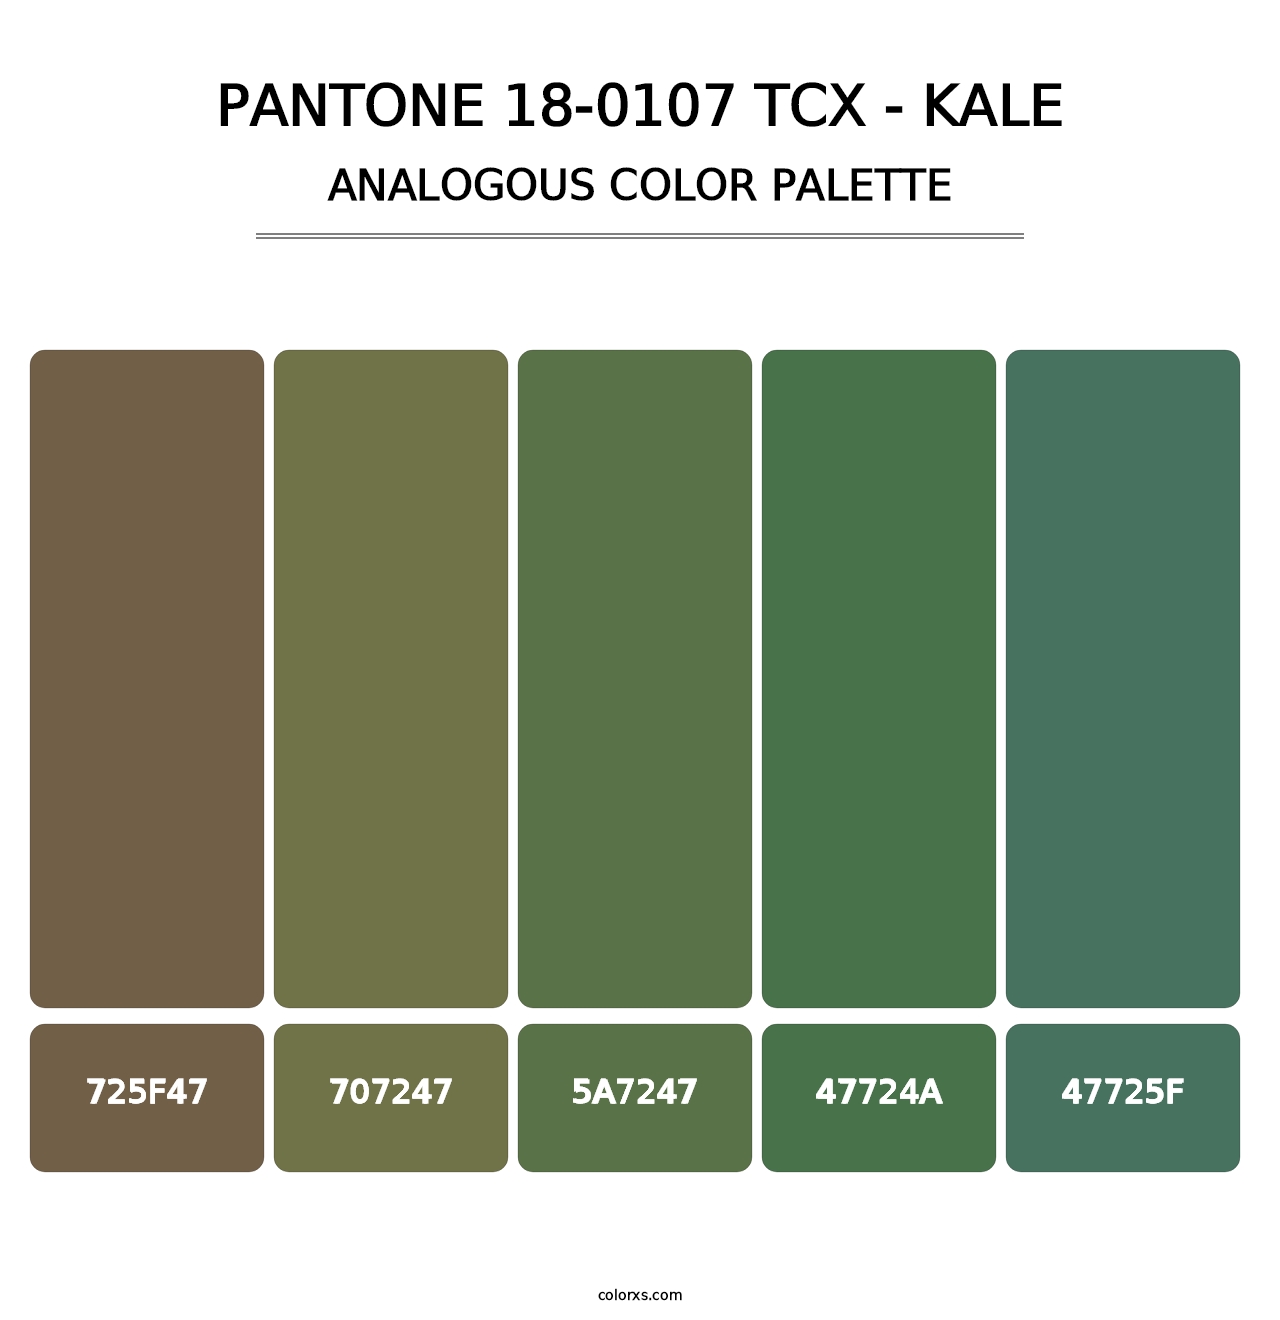 PANTONE 18-0107 TCX - Kale - Analogous Color Palette